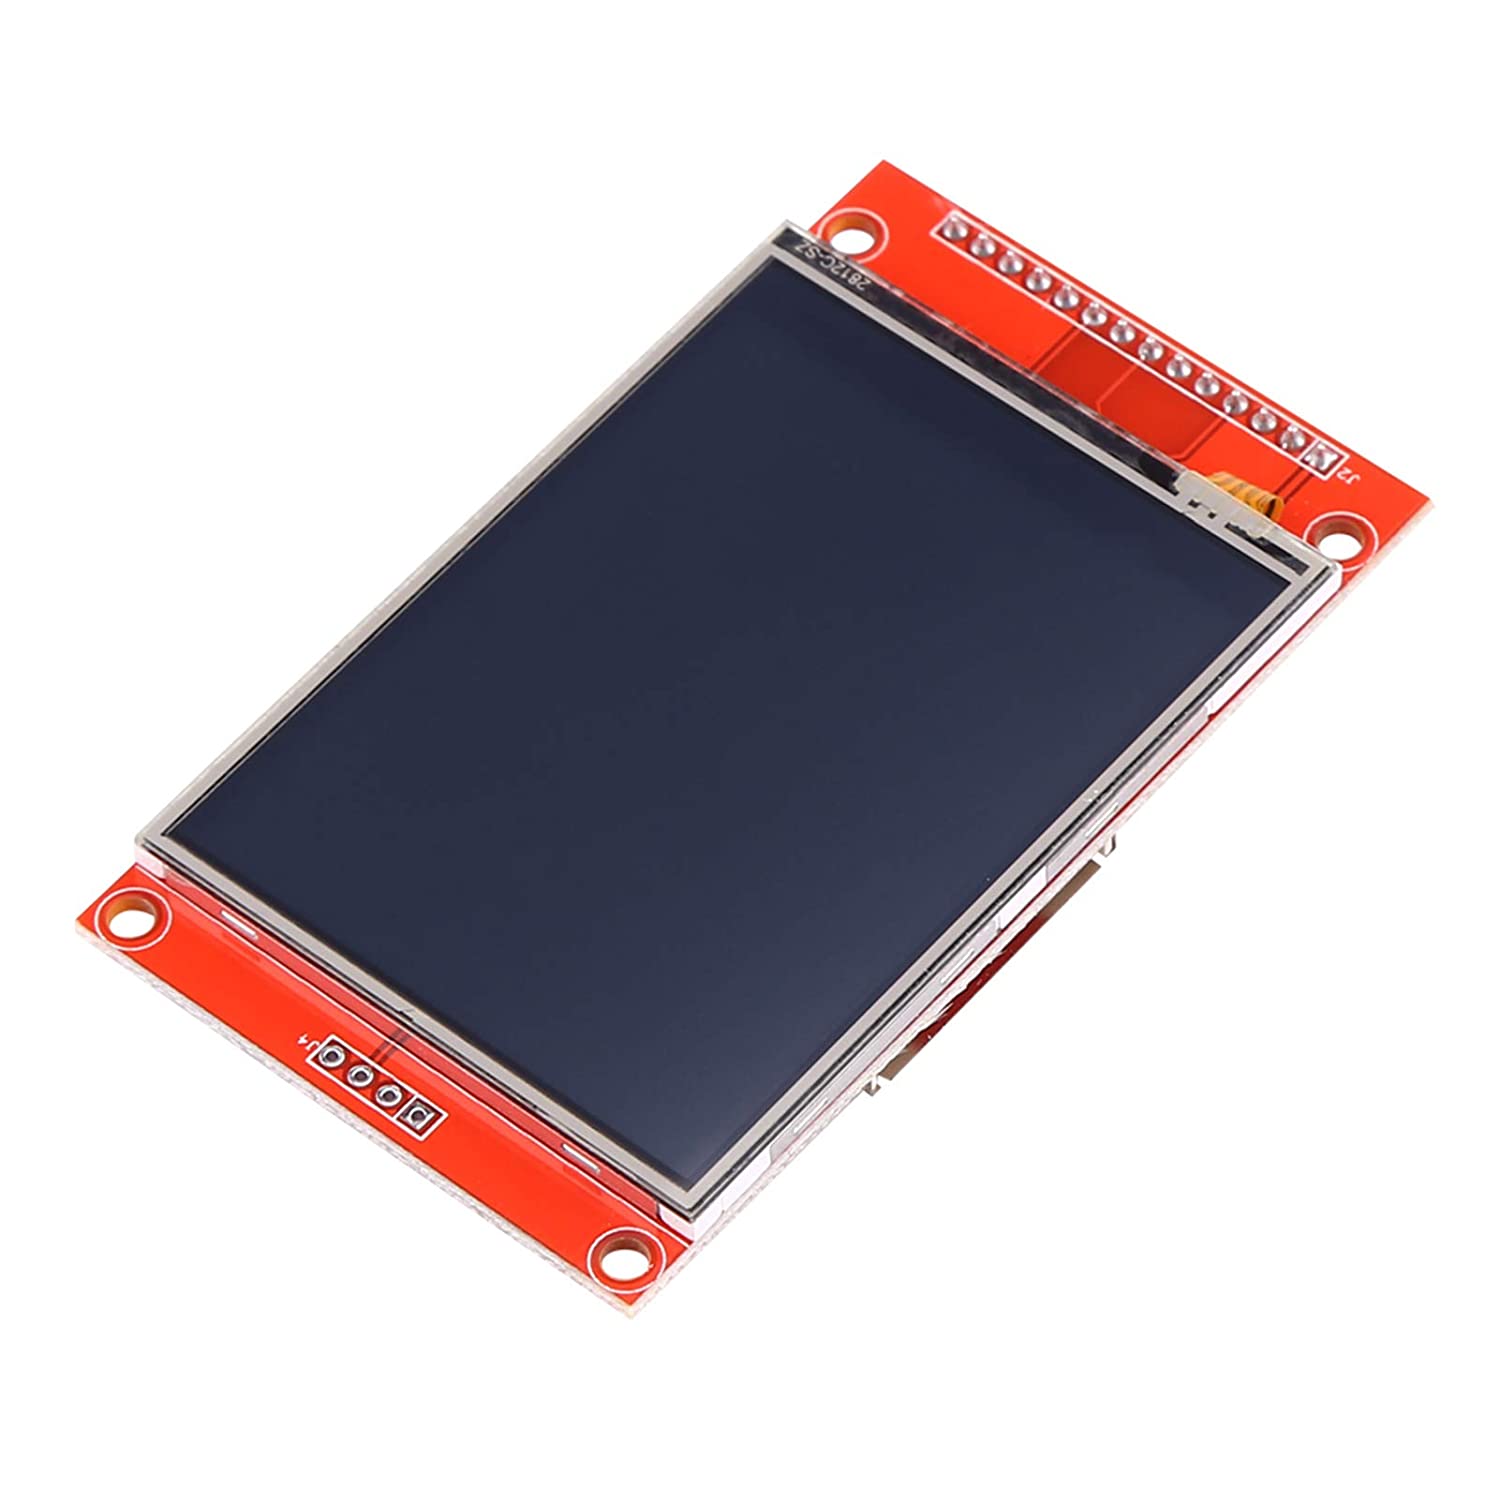 LCD TFT couleur 2.8 pouces tactile